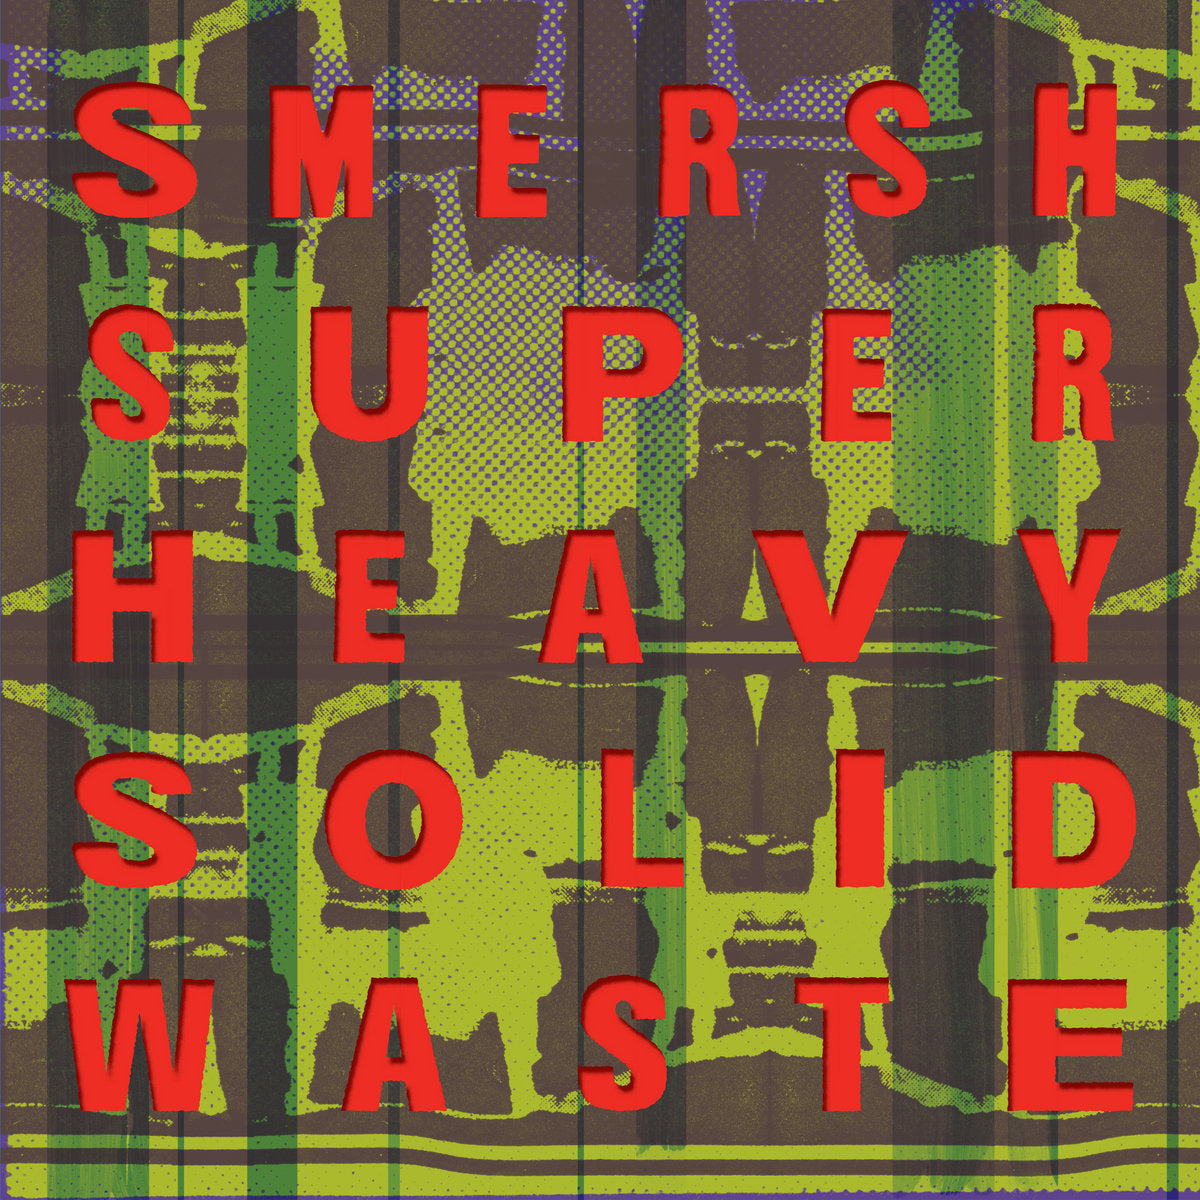 SMERSH - "SUPER HEAVY SOLID WASTE" LP